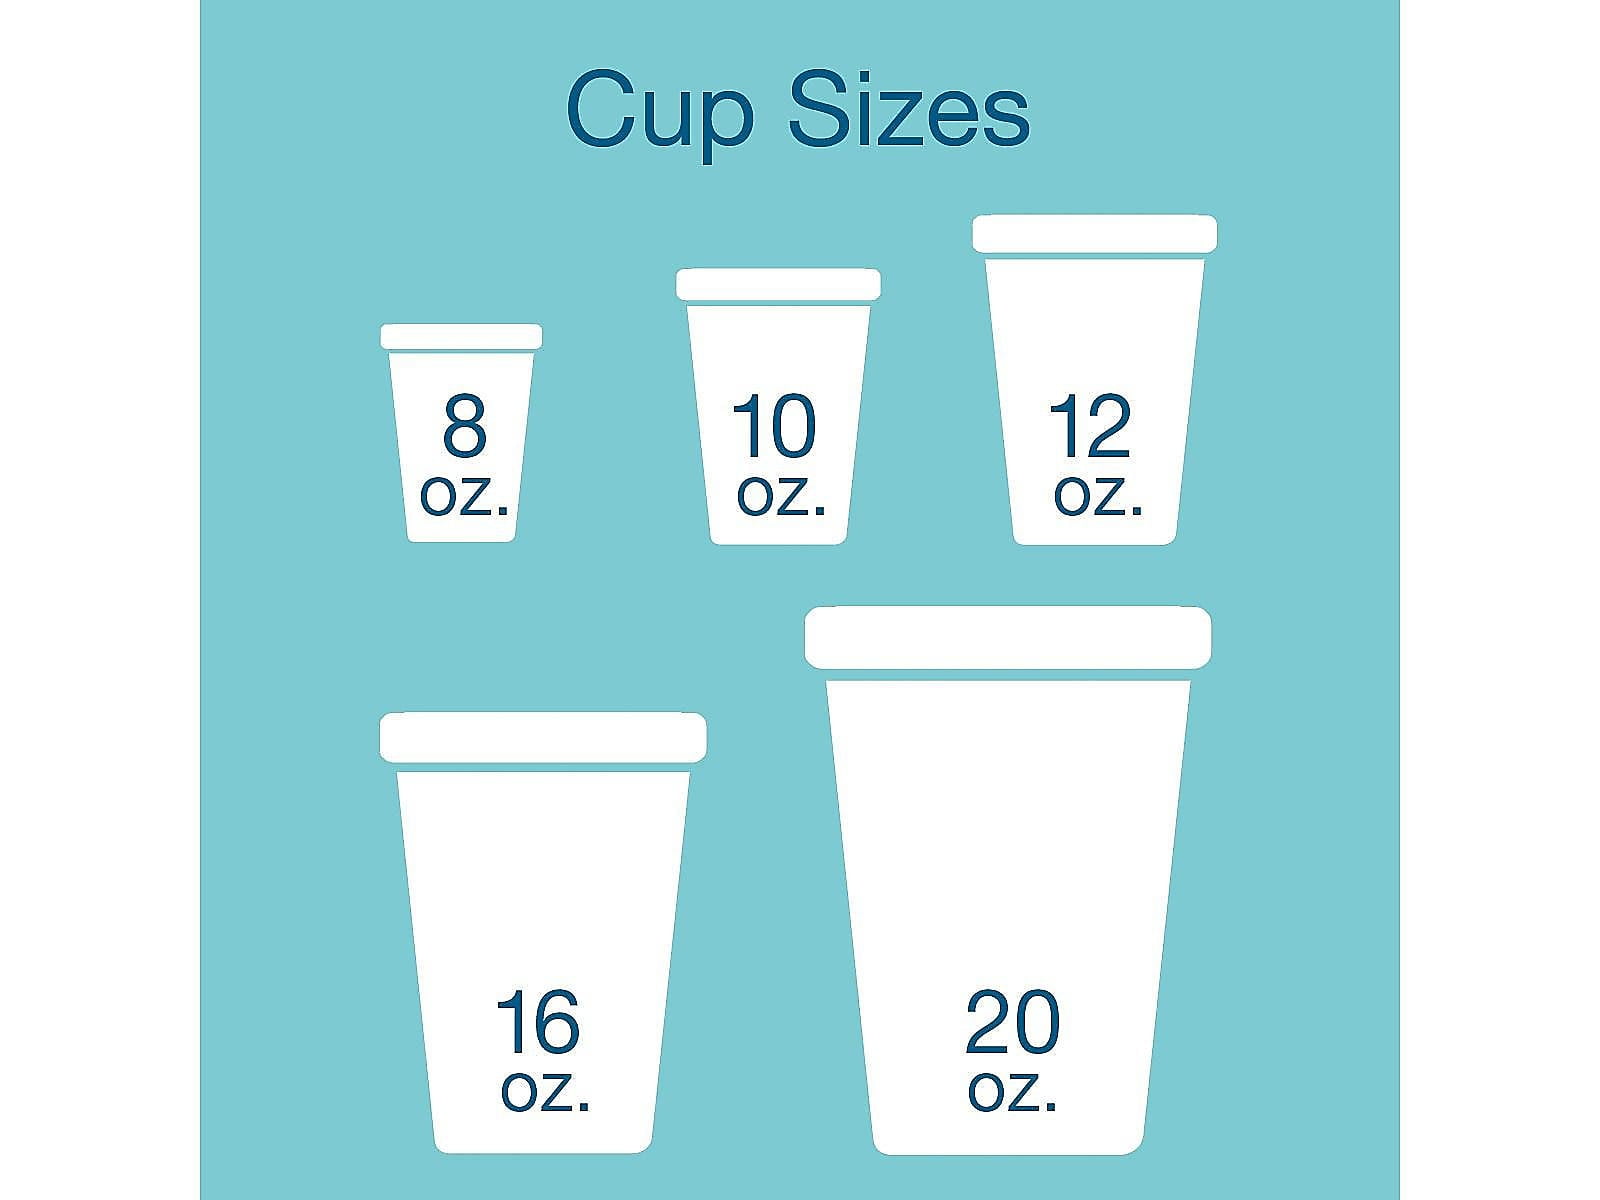 WinCup 240HW Beverage Cup, 16 oz Cup, Foam 12 Pack #VORG6214126, 240HW